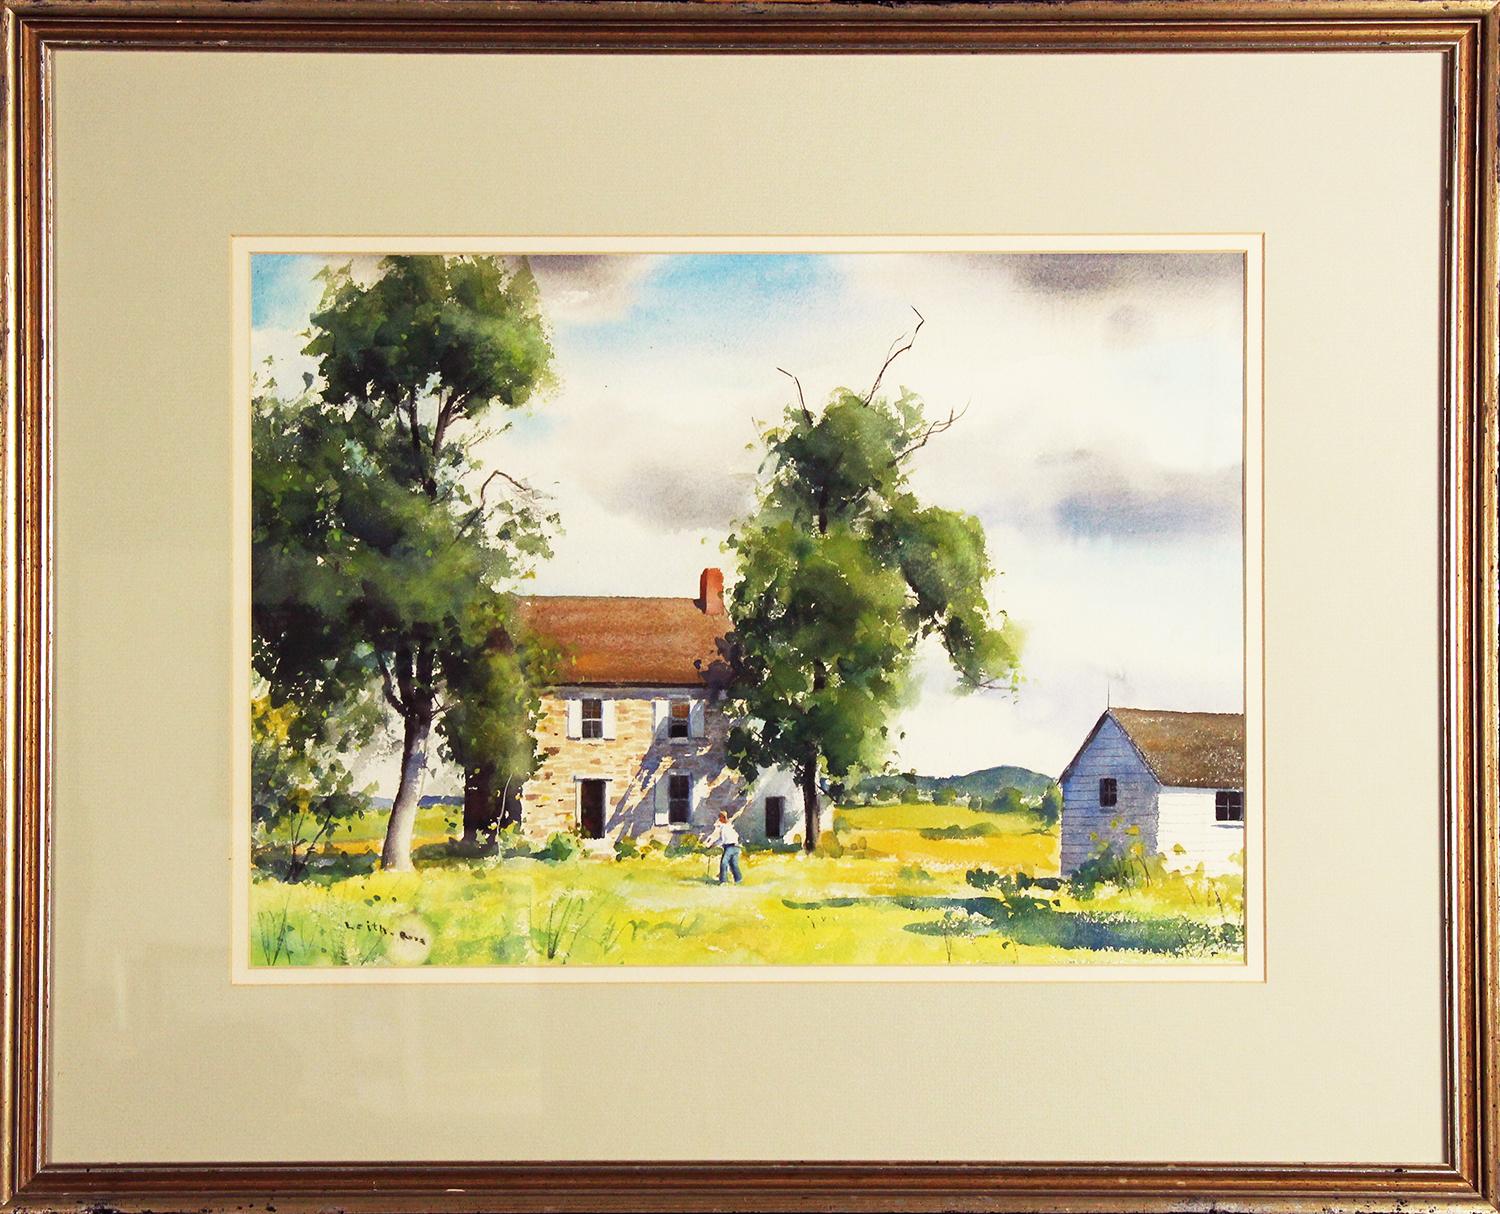 Homestead, ländliche amerikanische Landschaft von Pennsylvania-Impressionist – Painting von Harry Leith-Ross